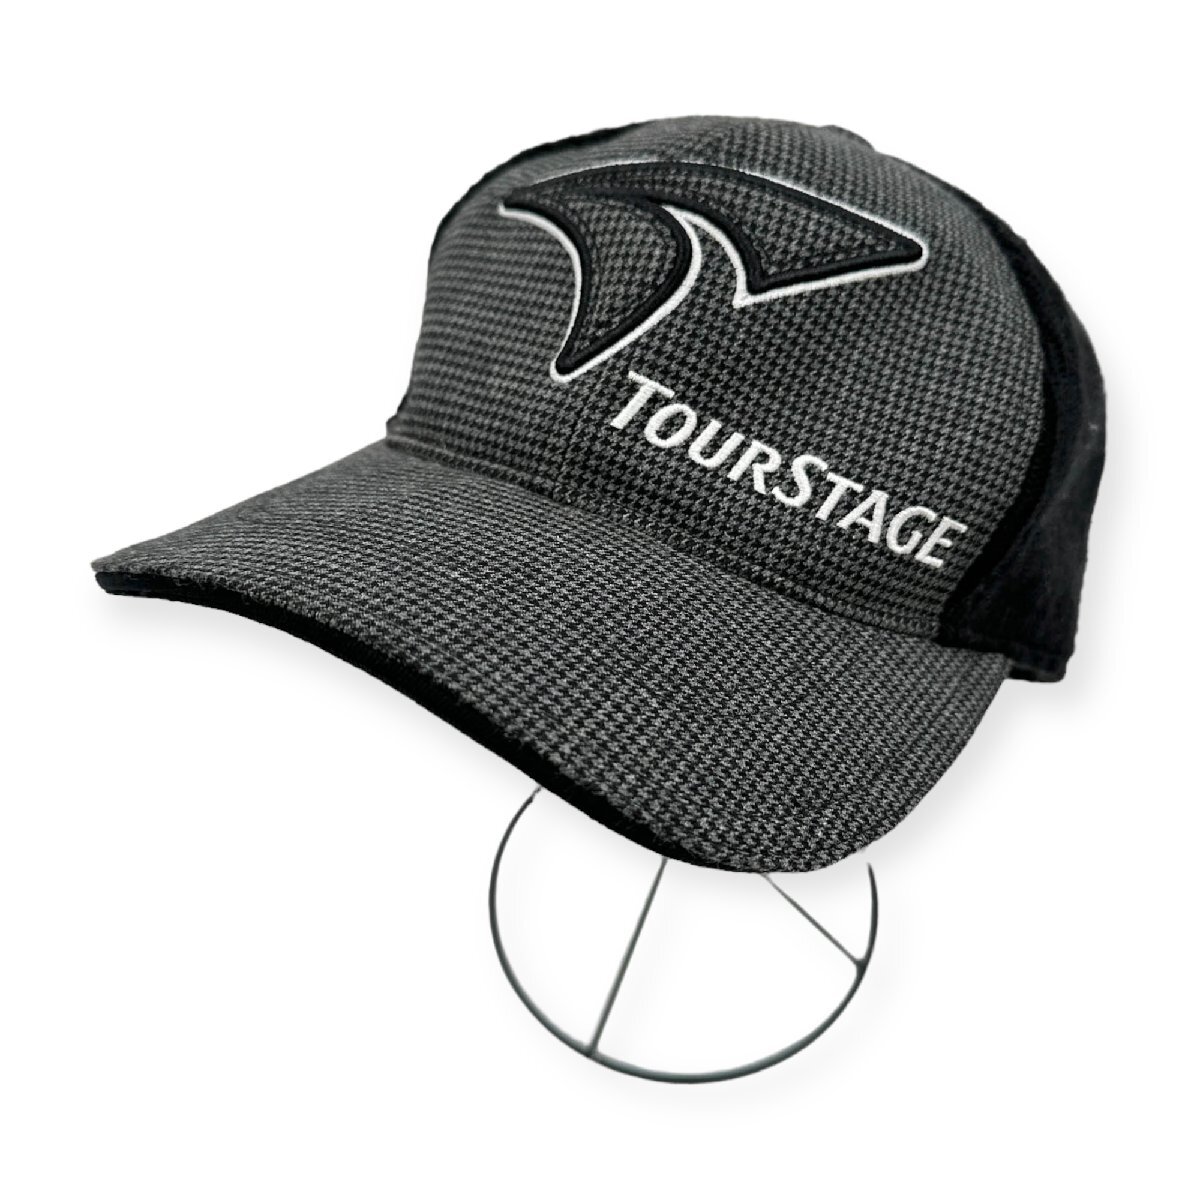  Golf *TOUR STAGE Tour Stage с логотипом тысяч птица рисунок переключатель вязаная шапка . колпак размер F/ чёрный черный / спорт 